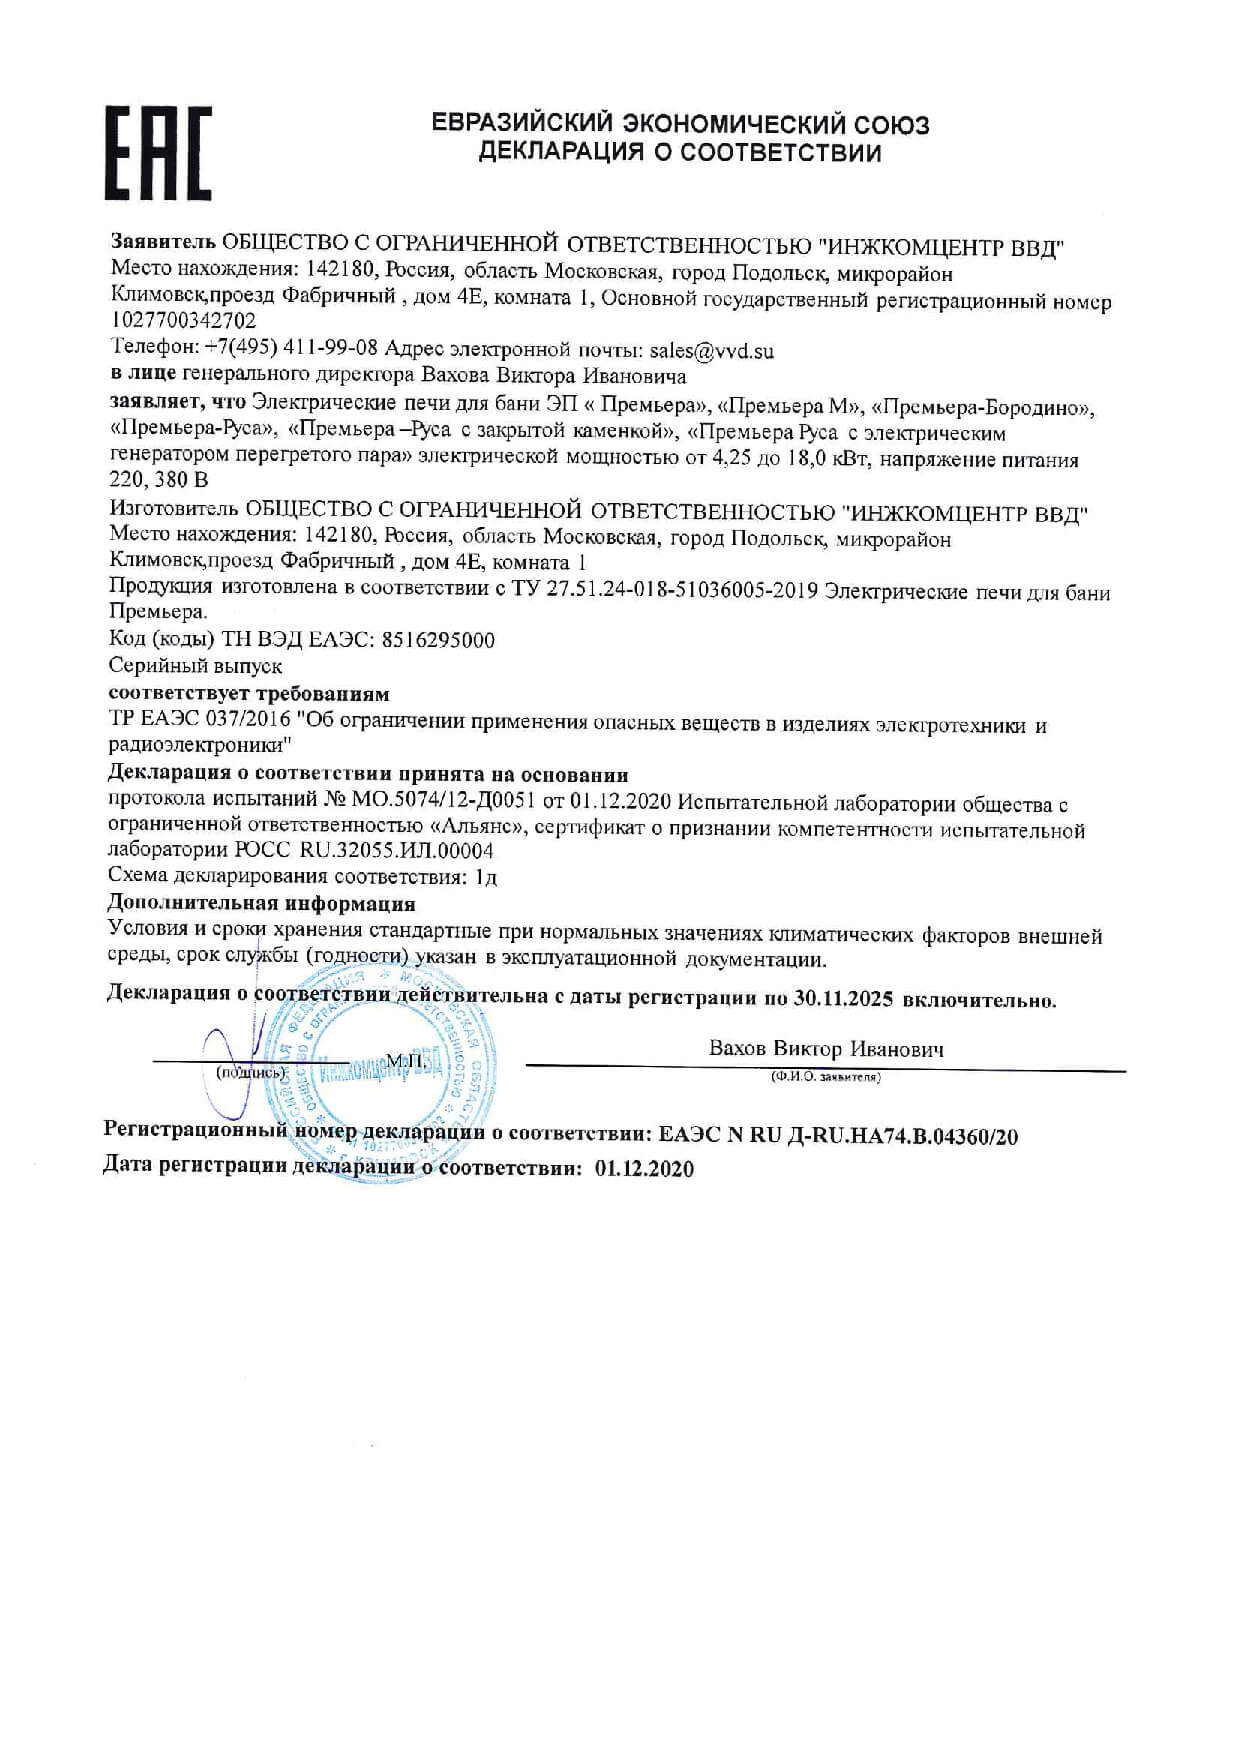 Сертификаты компании Инжкомцентр ВВД